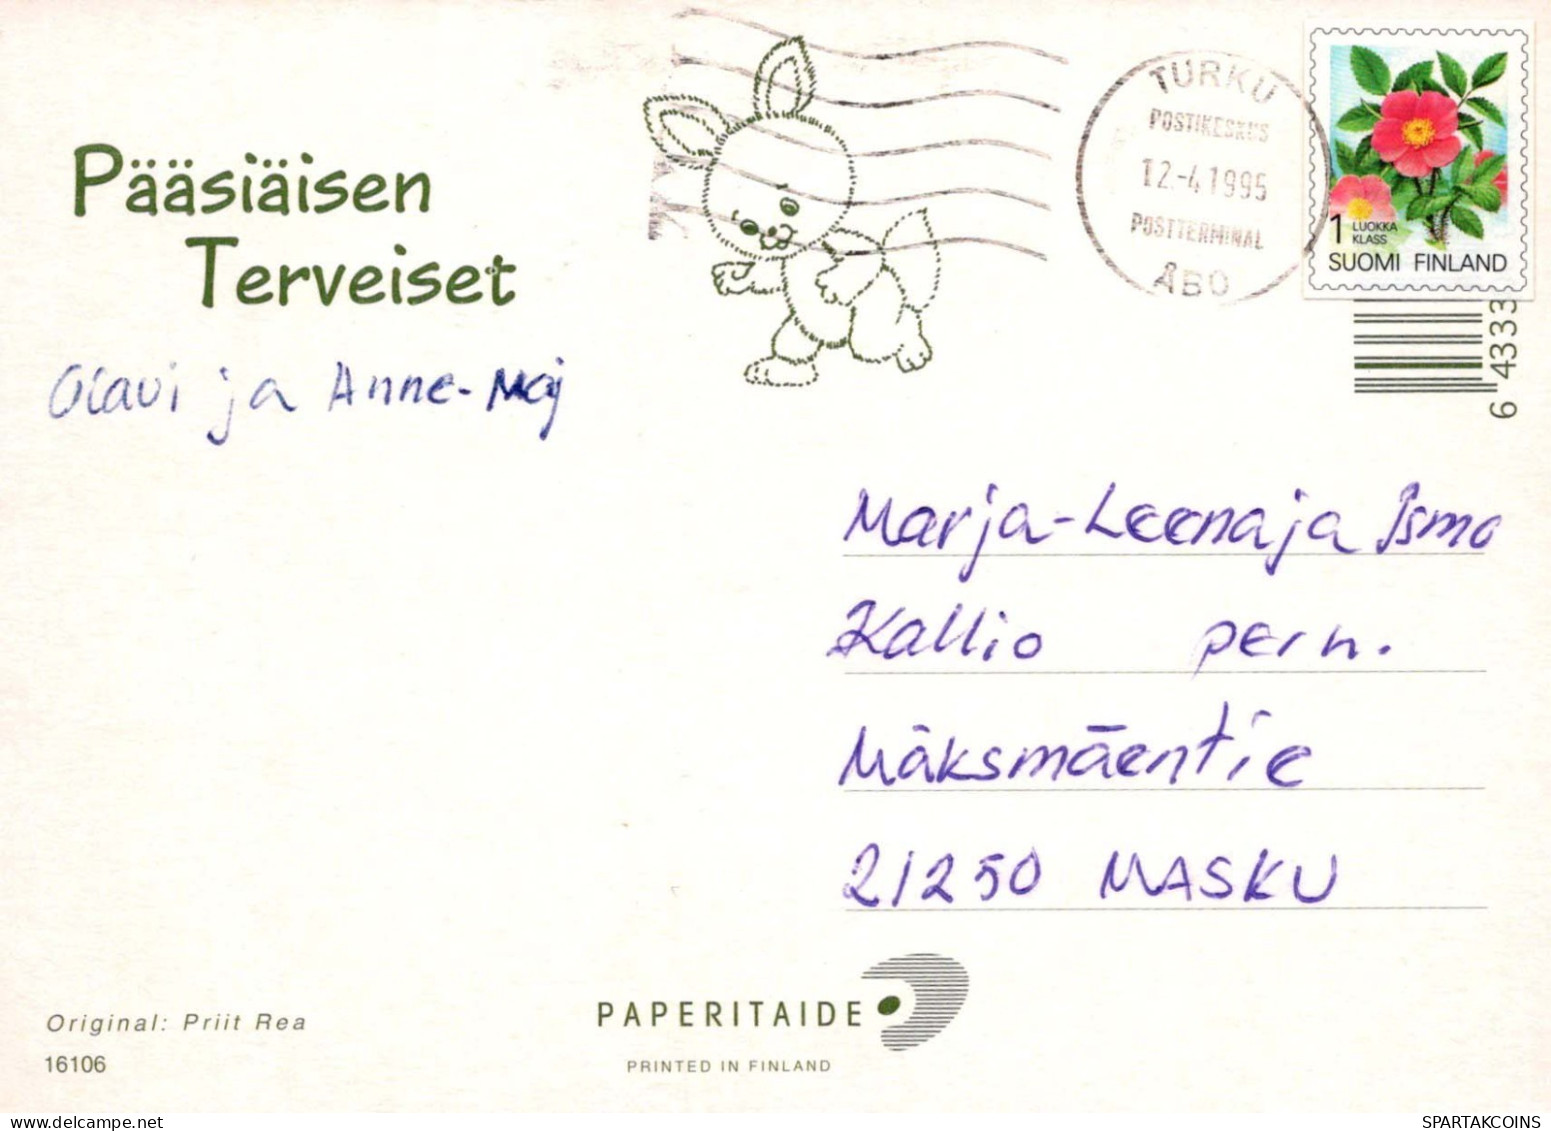 PASQUA POLLO UOVO Vintage Cartolina CPSM #PBO675.IT - Ostern